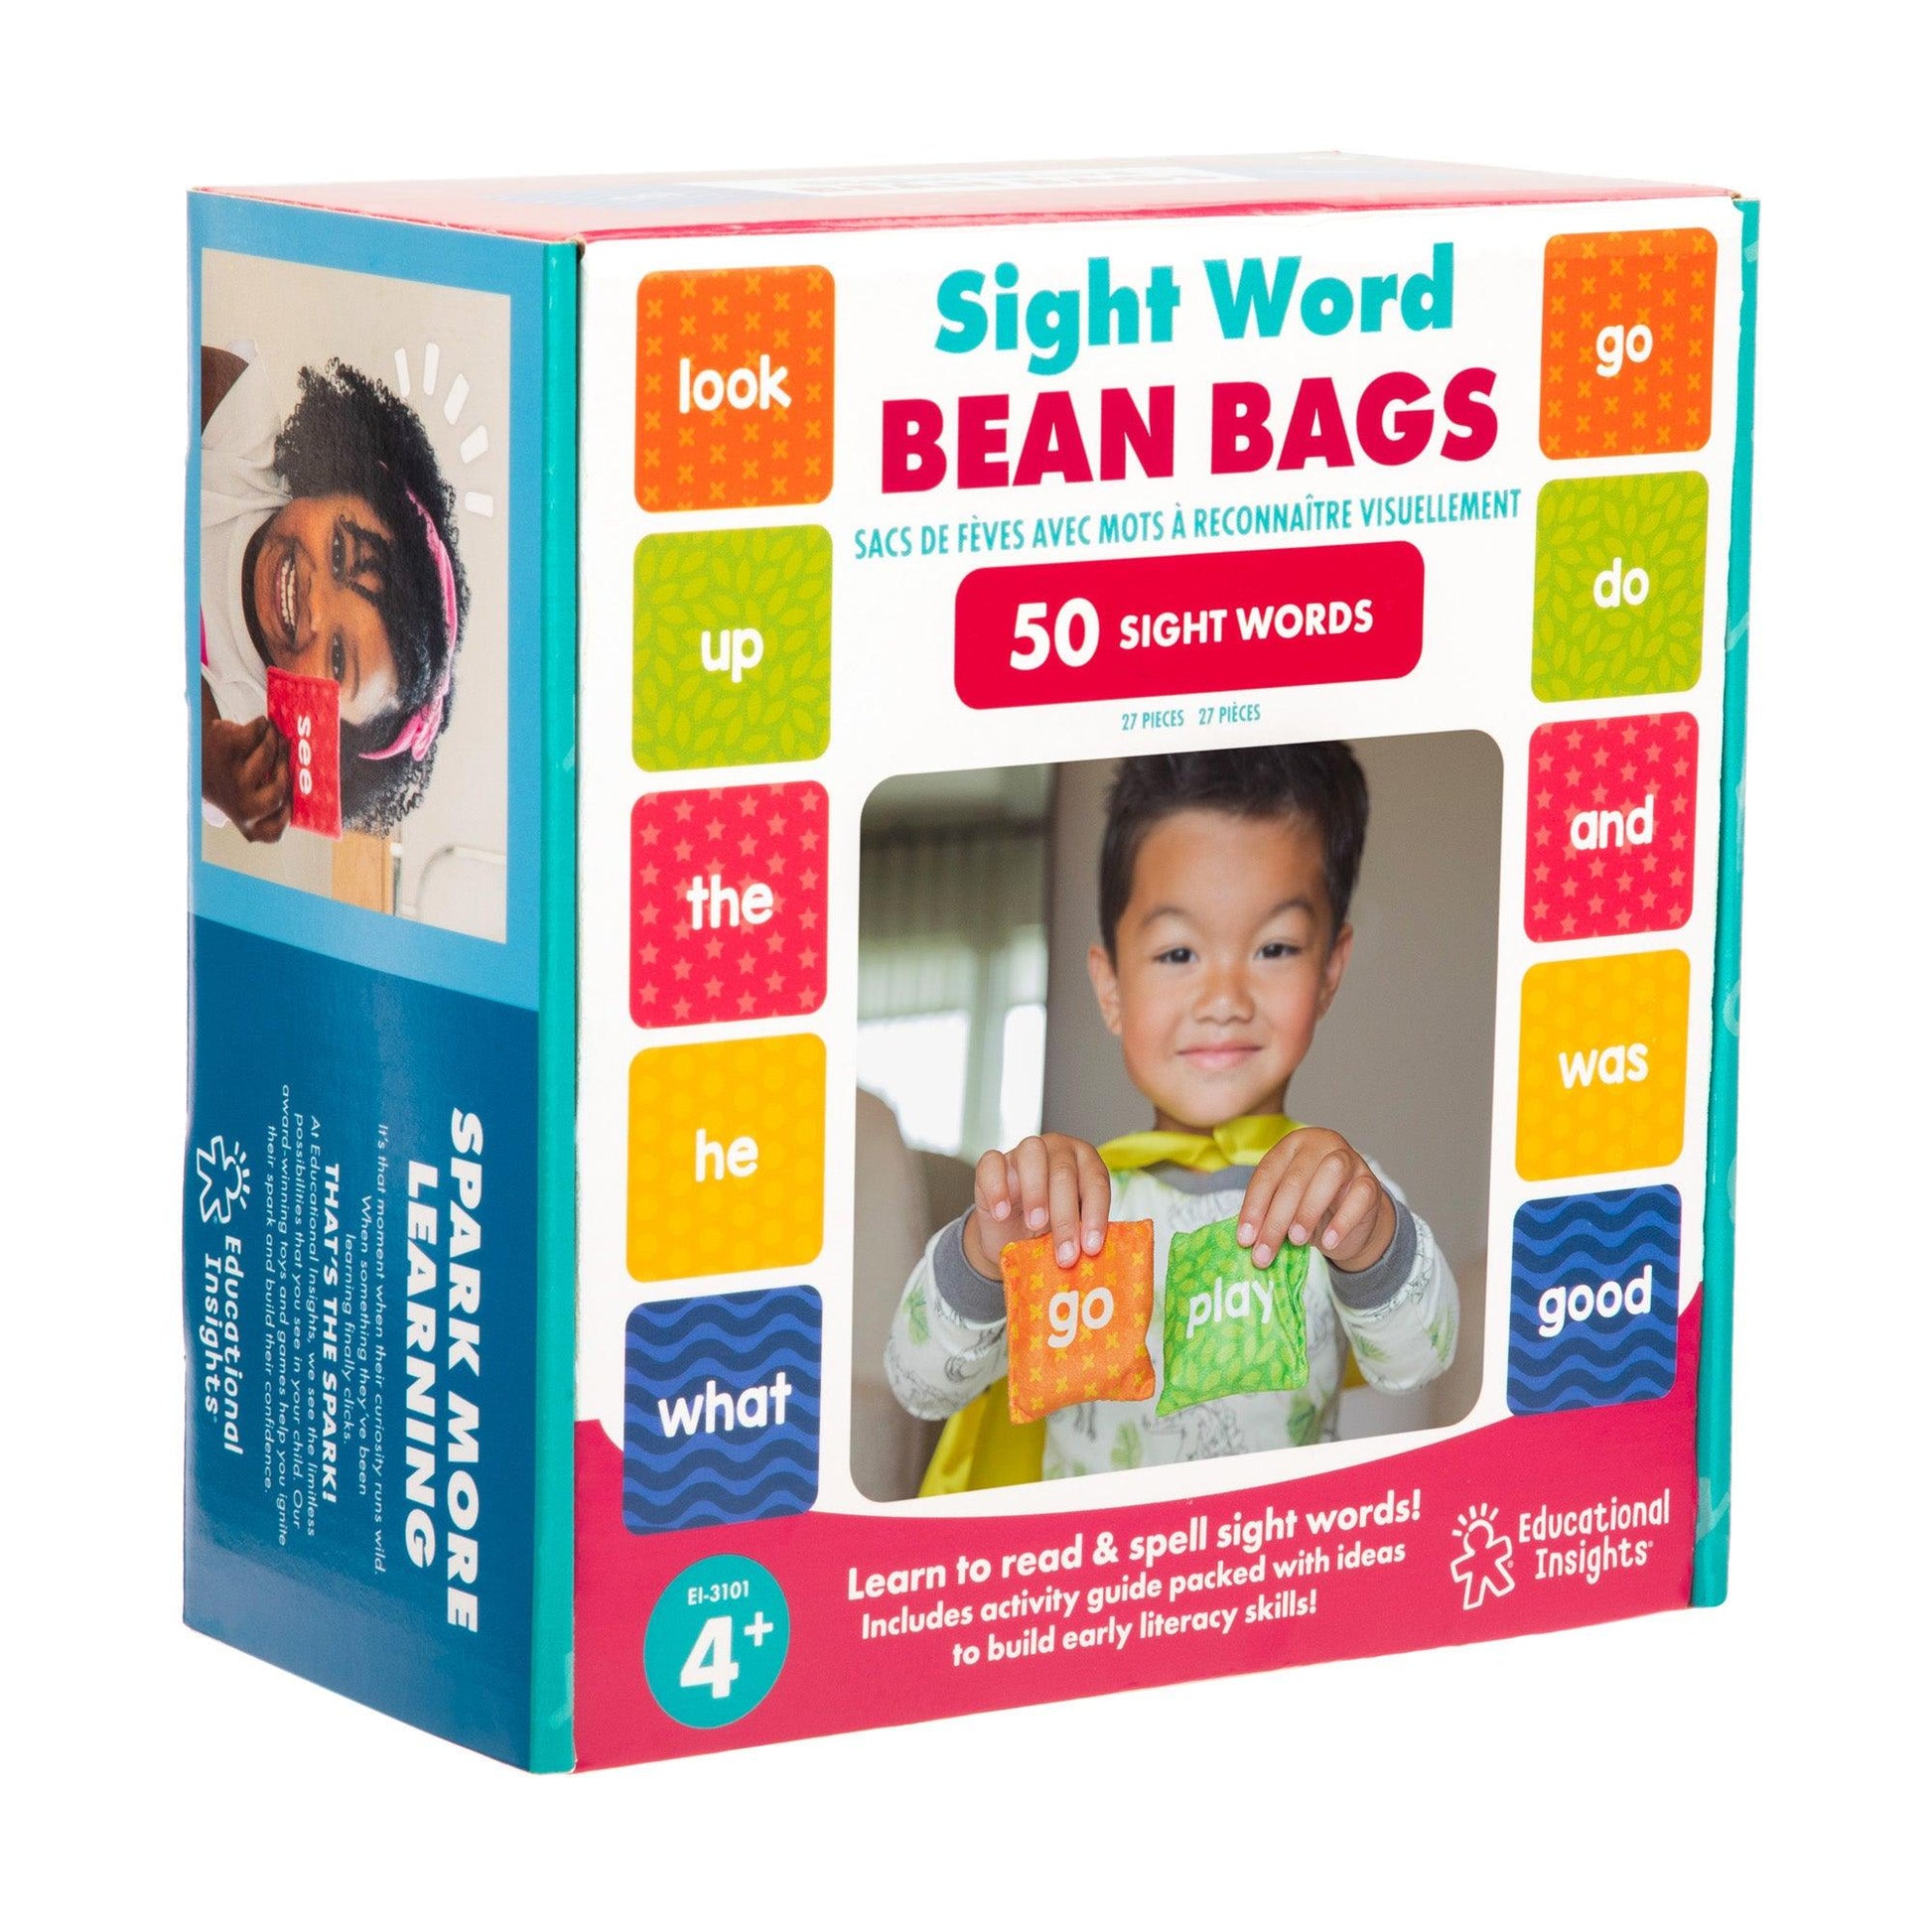 Sight Word Bean Bags - Loomini